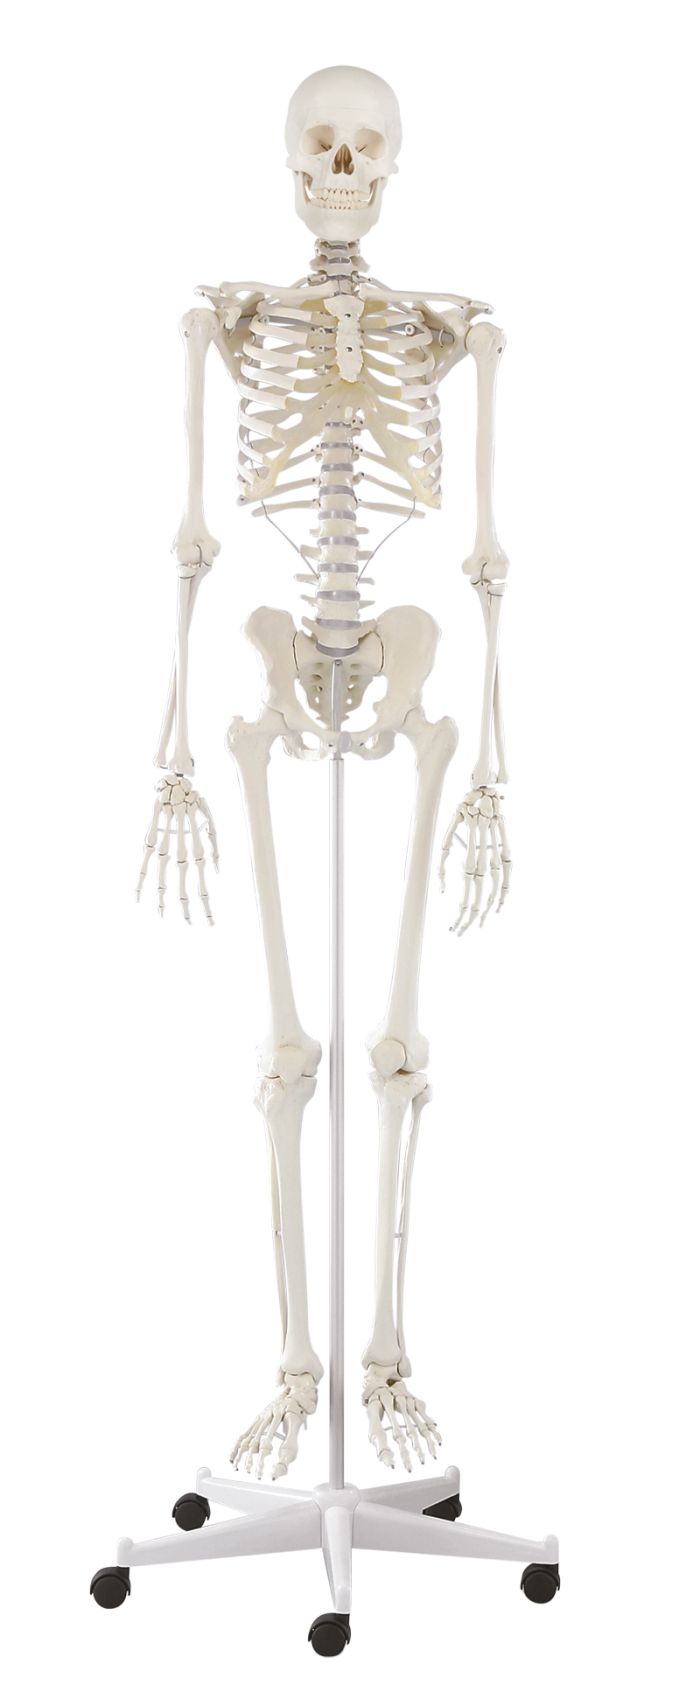 Skelett Willi, Bestellnummer 3001, Erler-Zimmer